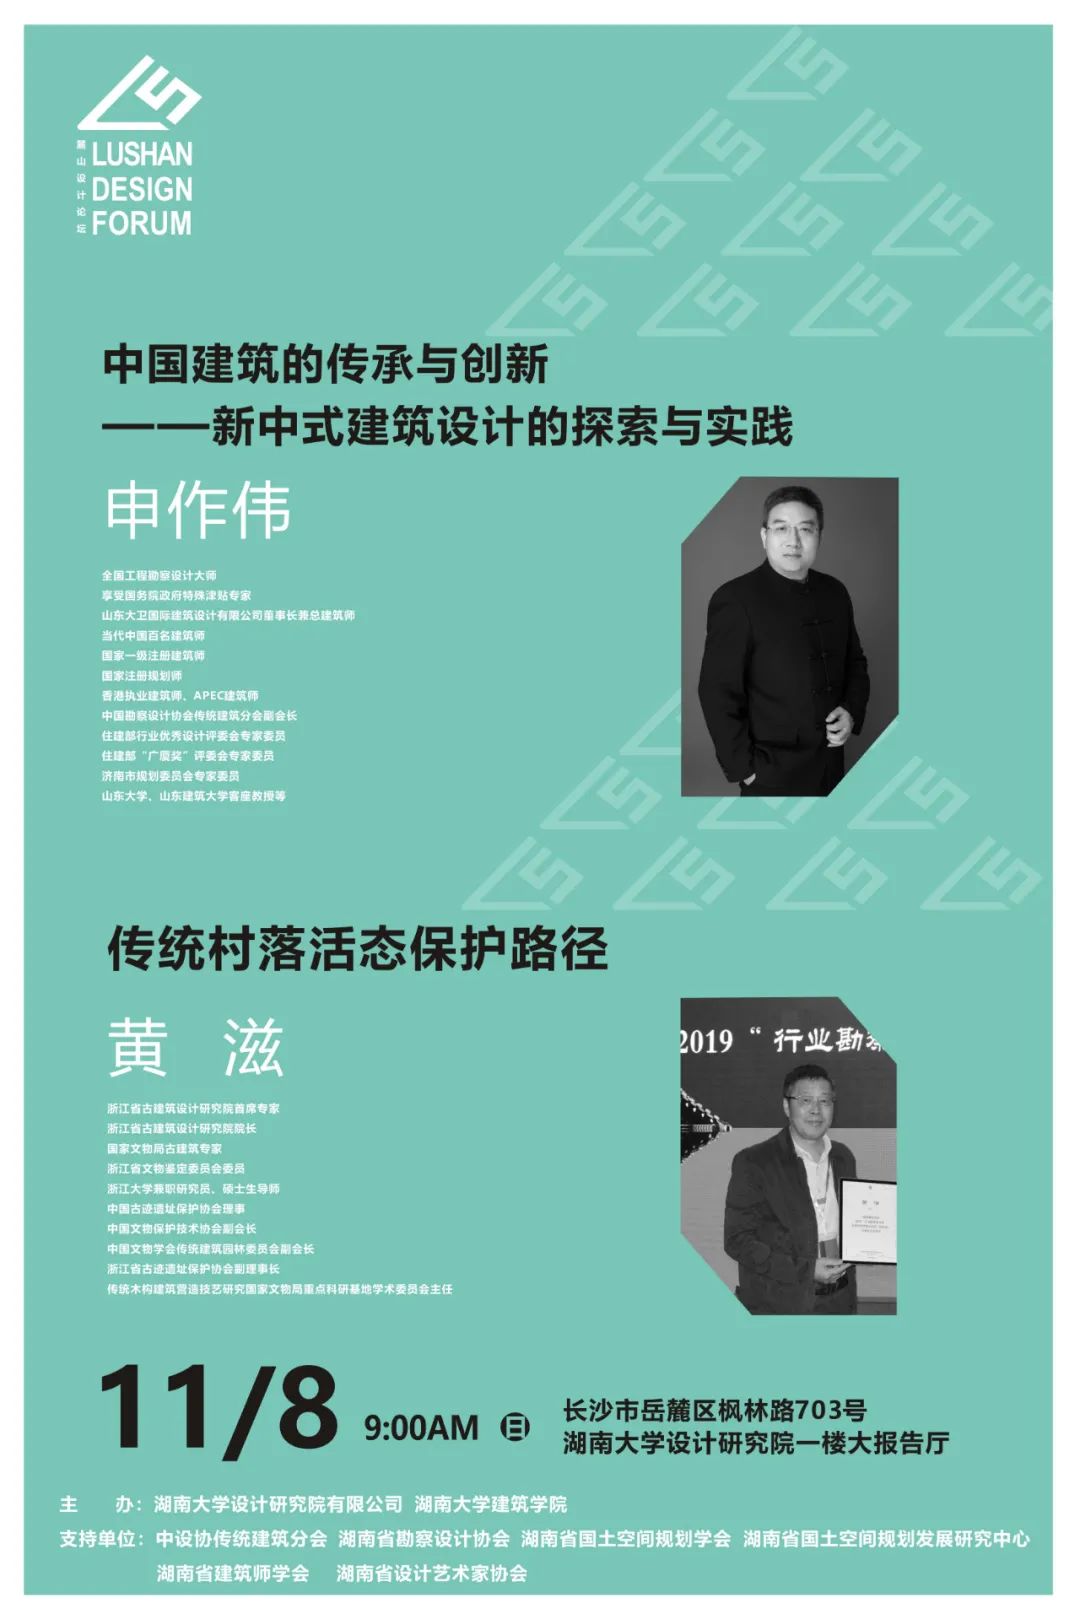 美创作品 | 麓山设计论坛LOGO、系列海报由湖南大学设计研究院文创中心美创团队设计